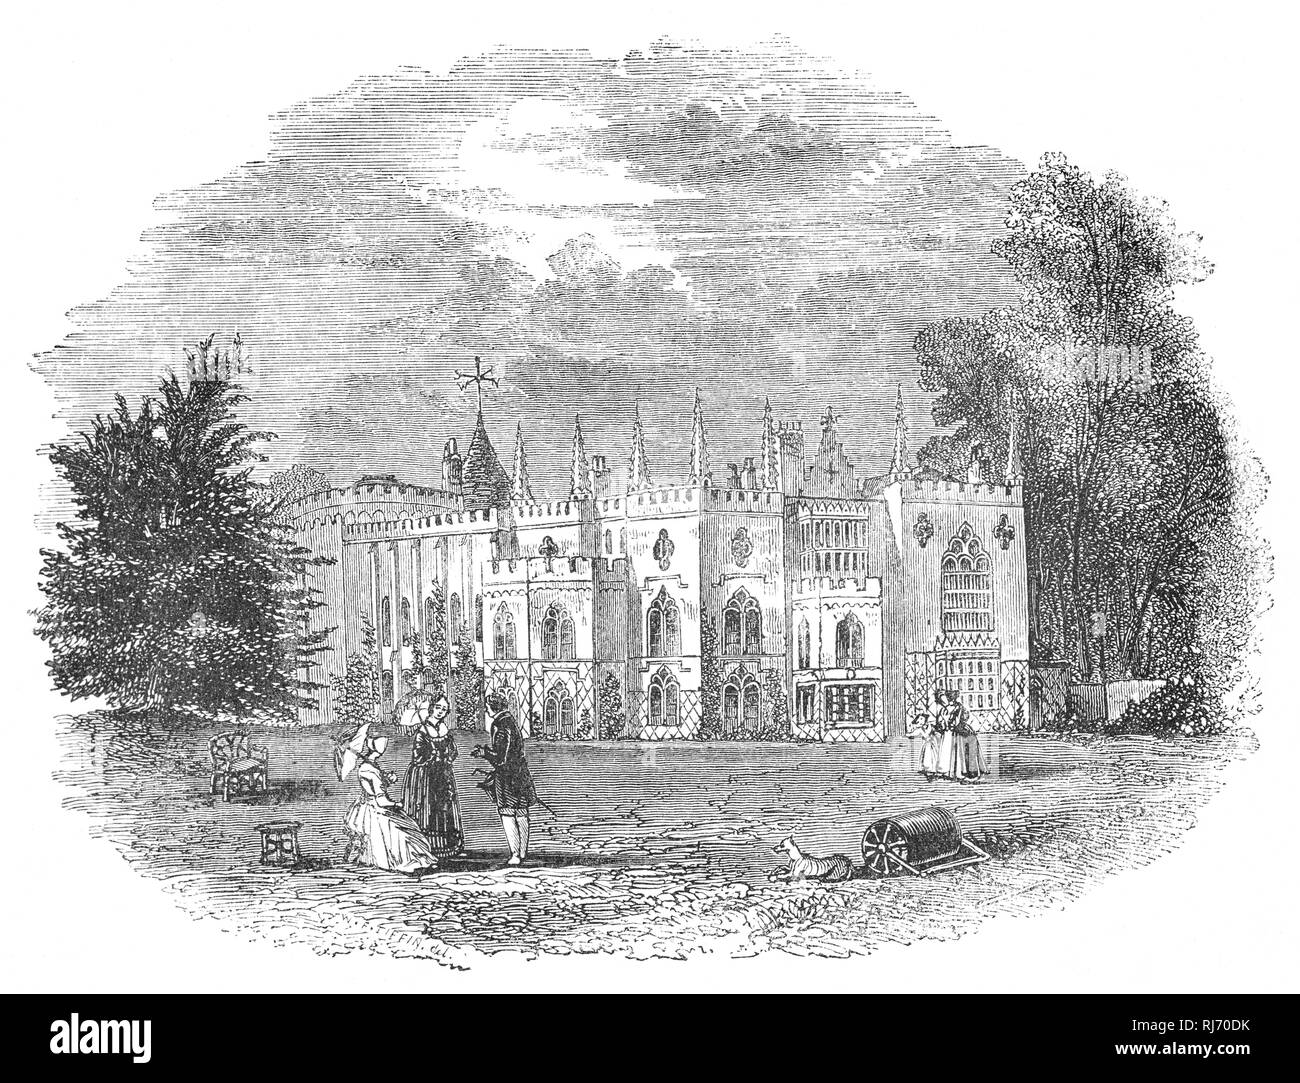 Strawberry Hill House costruito a Twickenham, a sud-ovest di Londra, ravvivare lo stile gotico alcuni decenni prima di Victorian successori. Fu costruito da Orazio Walpole, 4° Conte di Orford (1717-1797), noto anche come Horace Walpole, il figlio del primo Primo Ministro britannico Sir Robert Walpole, fu uomo politico whig, storico dell'arte, uomo di lettere, antiquario e una scrittrice inglese la cui fama letteraria si appoggia sul primo romanzo gotico, il castello di Otranto (1764), e le sue lettere, che sono dei vantaggi sociali e interessi politici. Foto Stock